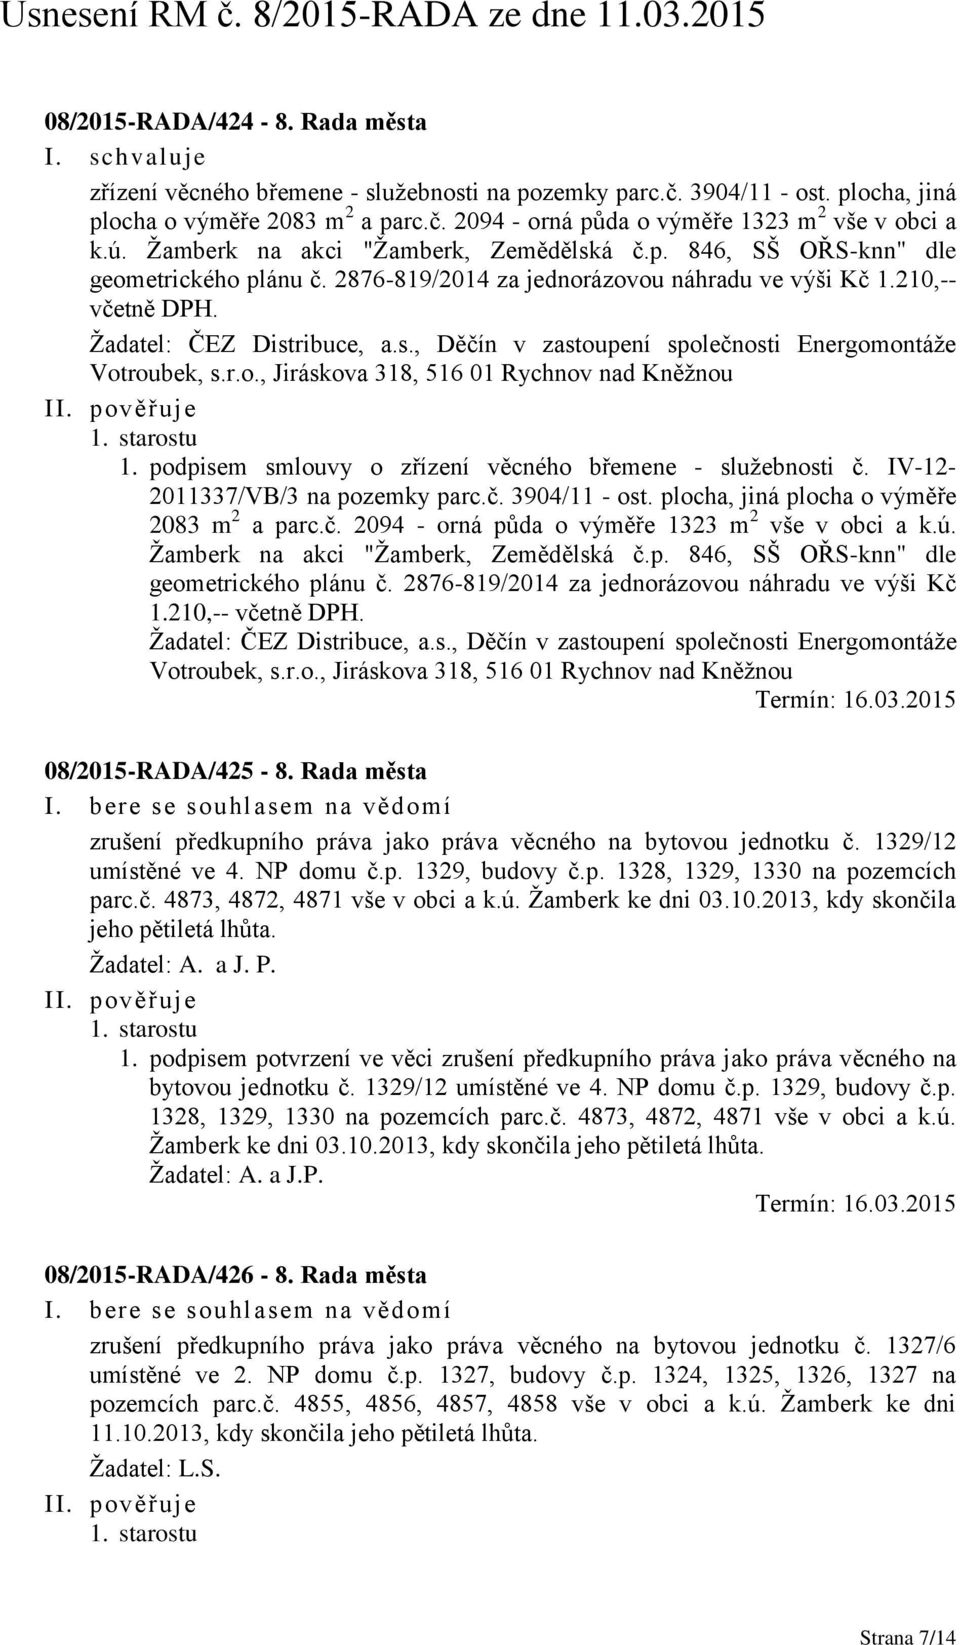 r.o., Jiráskova 318, 516 01 Rychnov nad Kněžnou 1. starostu 1. podpisem smlouvy o zřízení věcného břemene - služebnosti č. IV-12-2011337/VB/3 na pozemky parc.č. 3904/11 - ost.